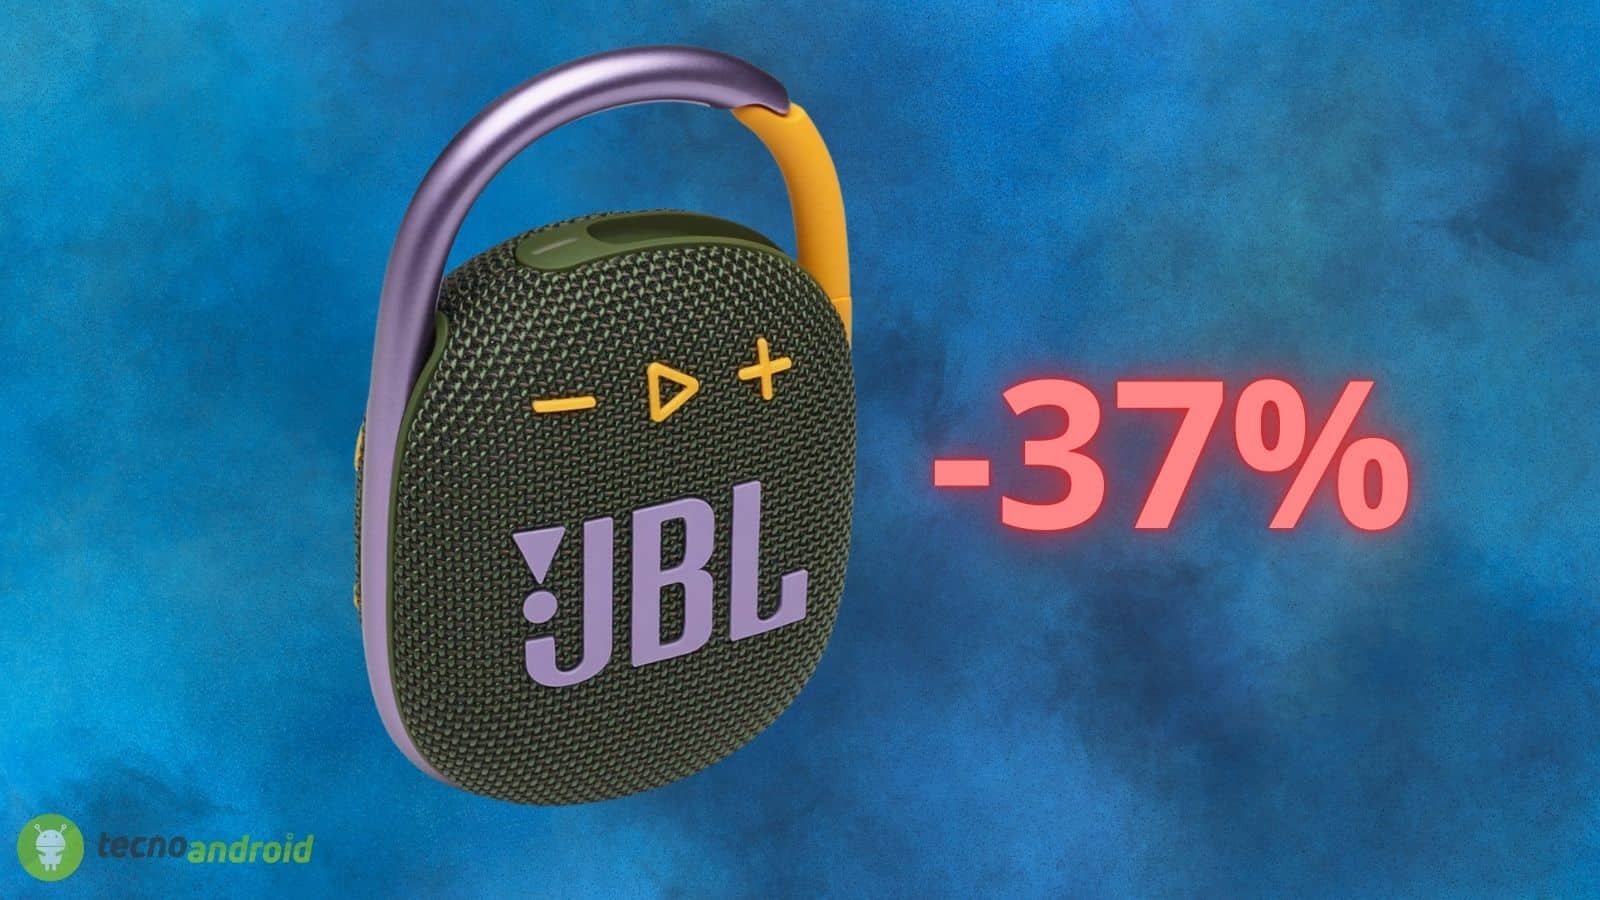 JBL Clip 4: altoparlante bluetooth portatile SCONTATO del 37% su AMAZON